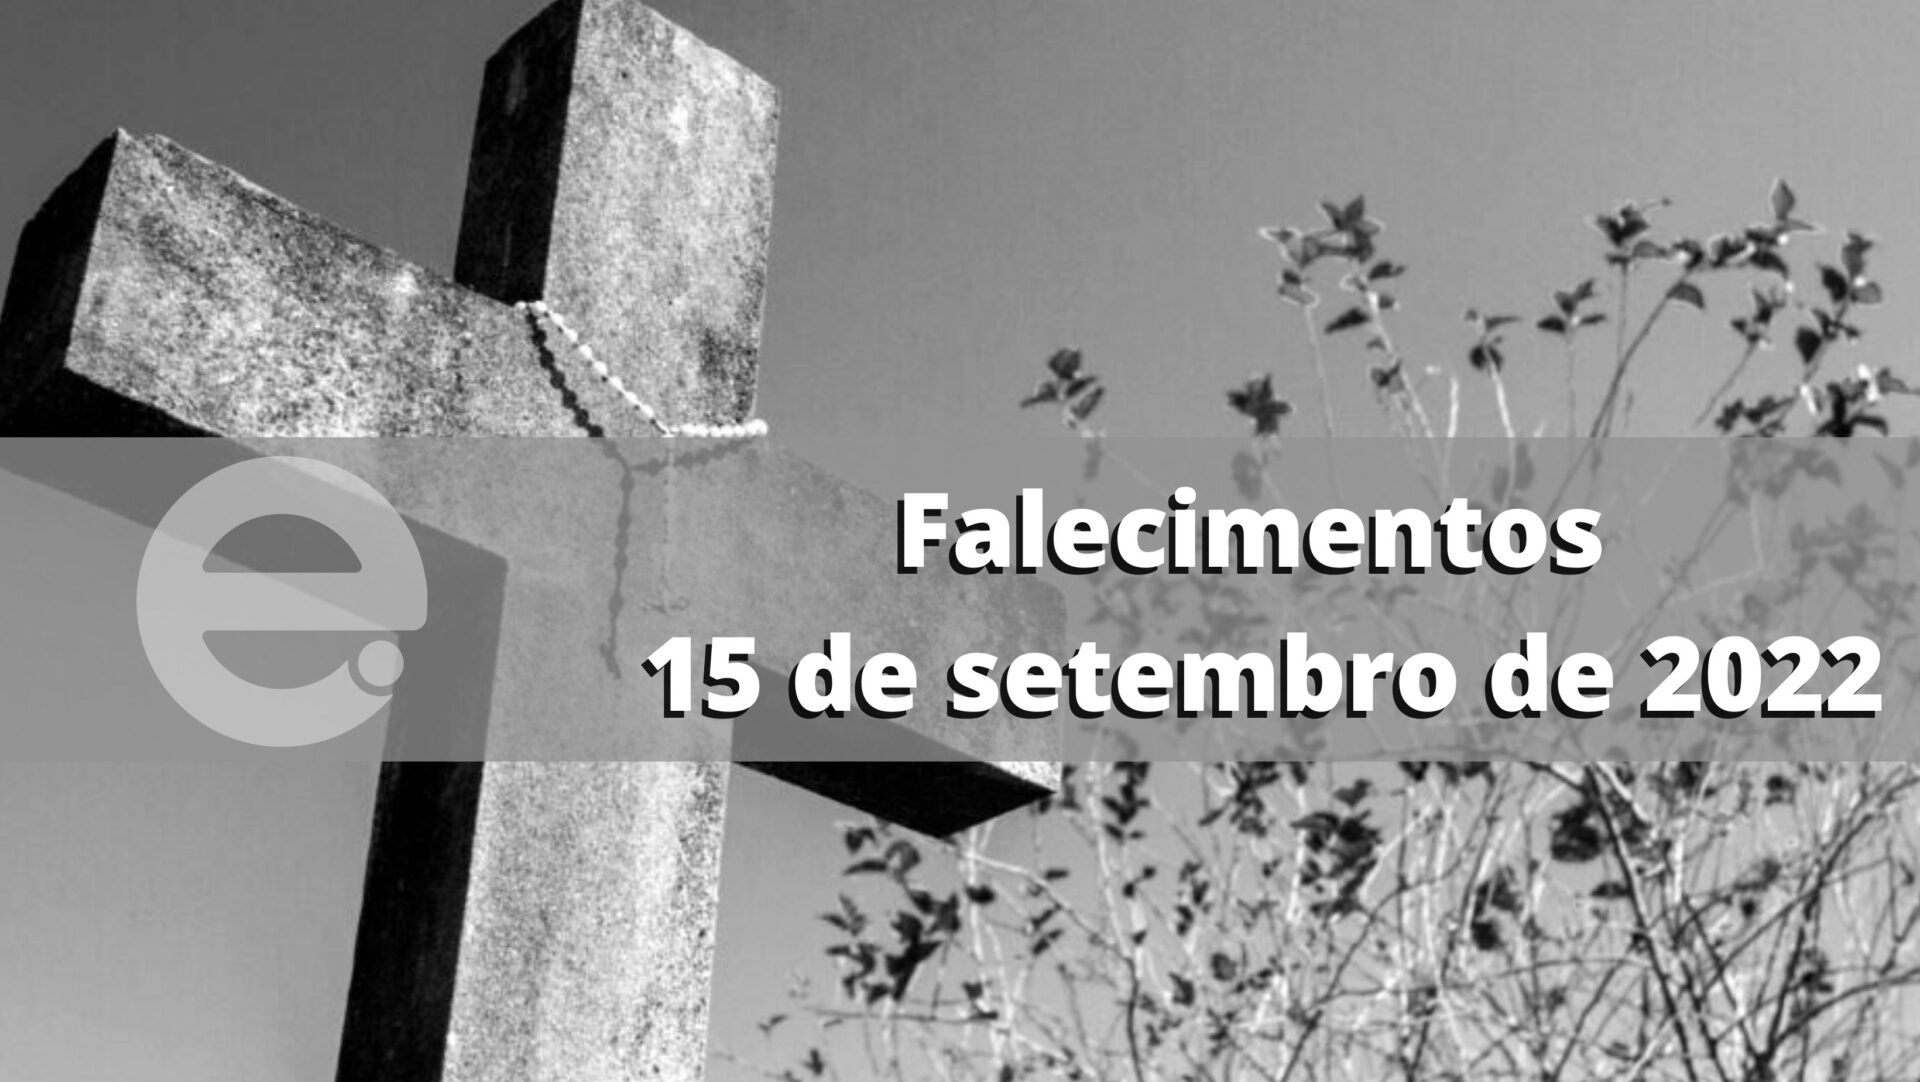 Confira os falecimentos desta quinta-feira, 15 de setembro de 2022, em Limeira